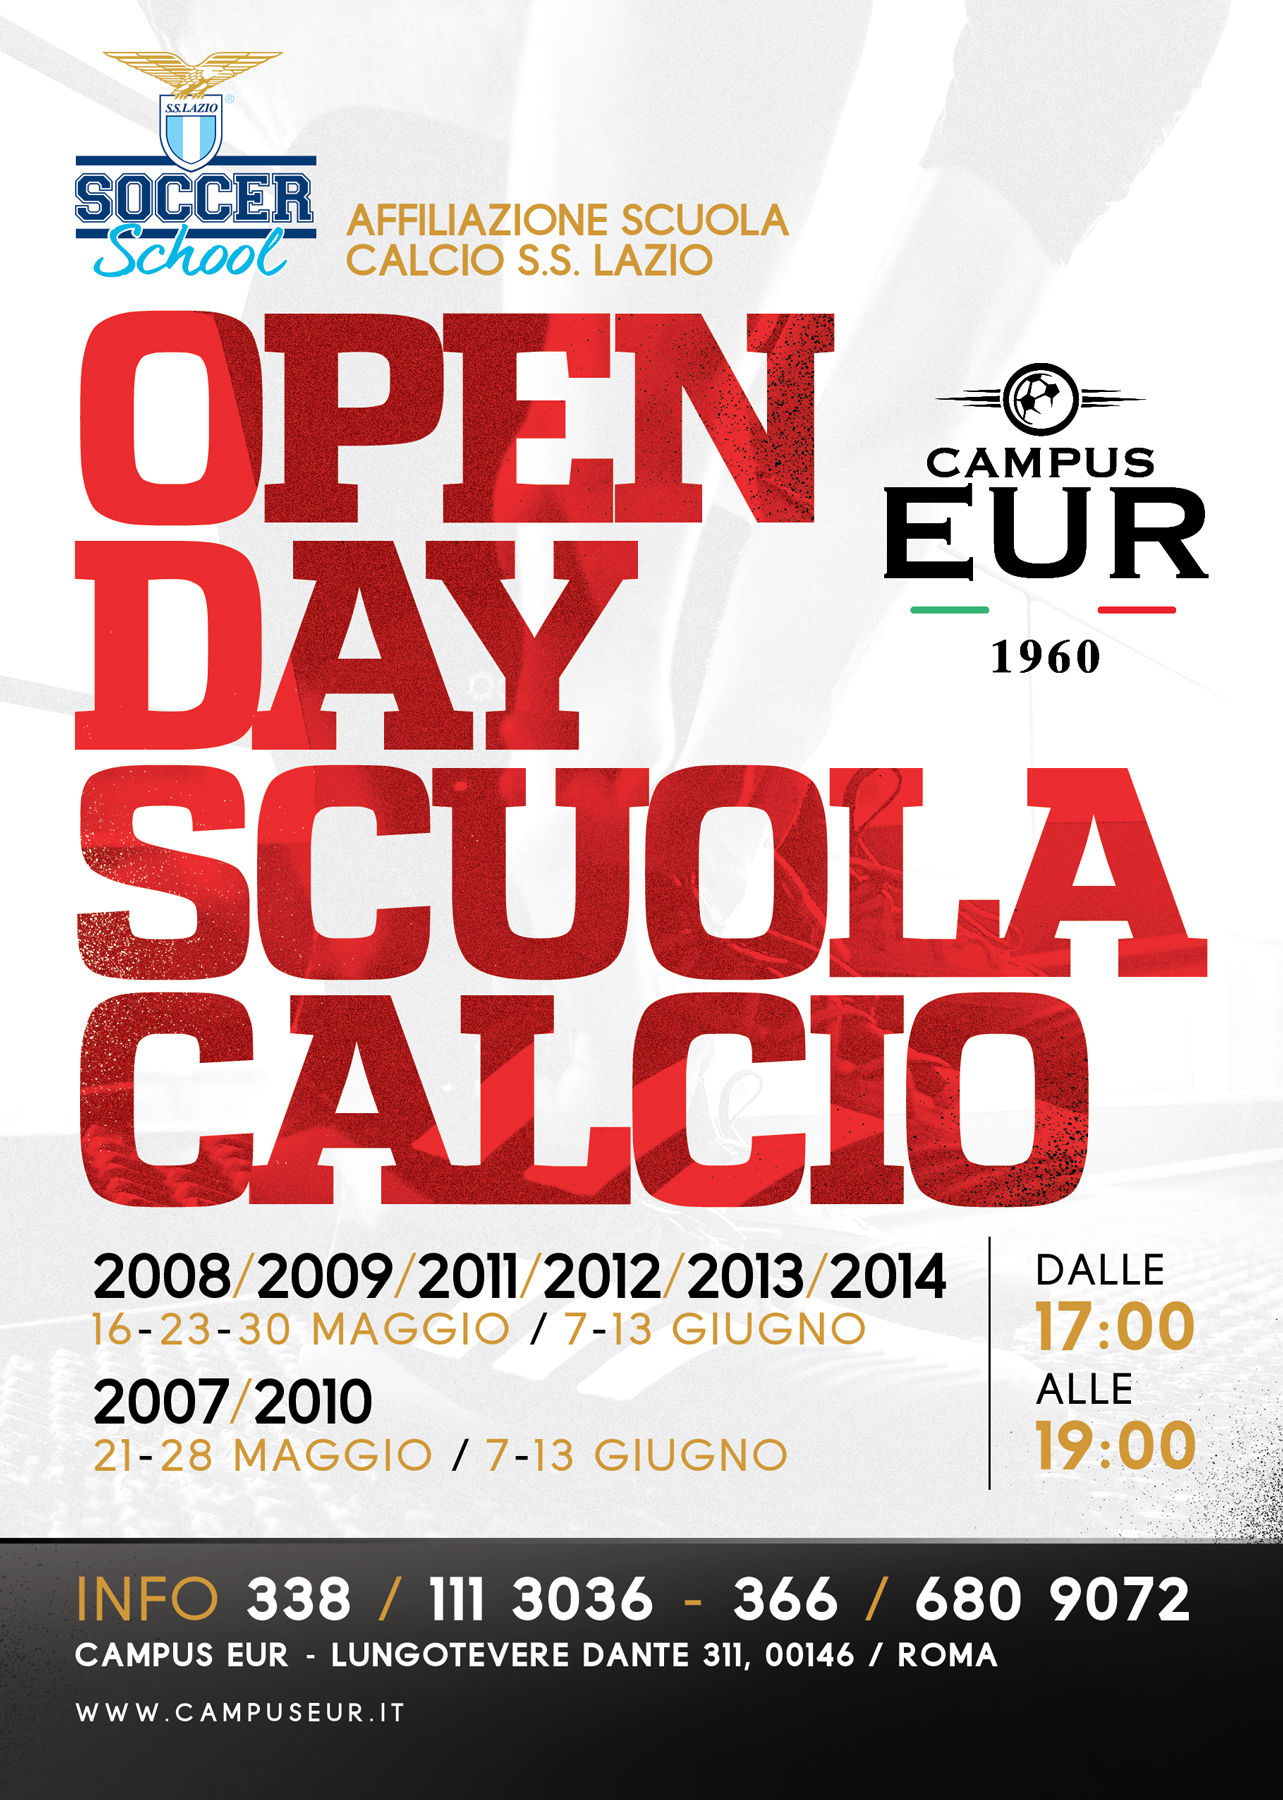 OPEN DAY SCUOLA CALCIO!